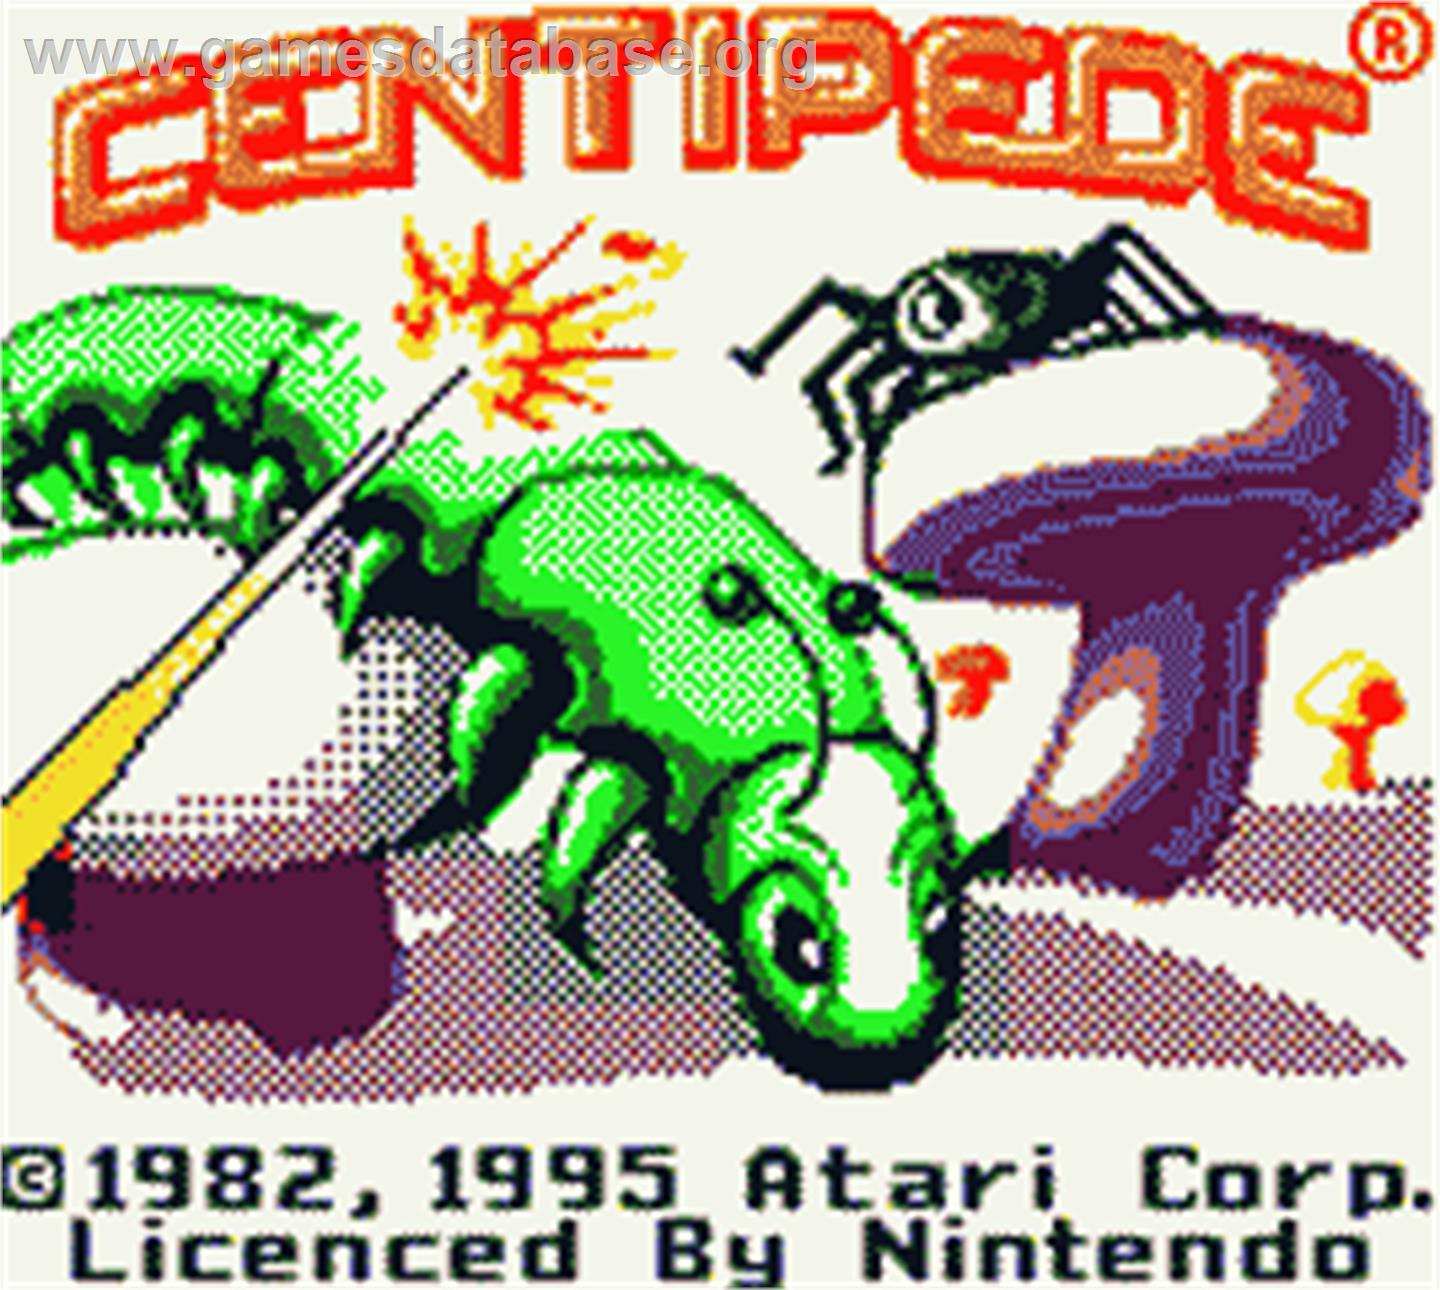 Centipede - Nintendo Game Boy Color - Artwork - Title Screen